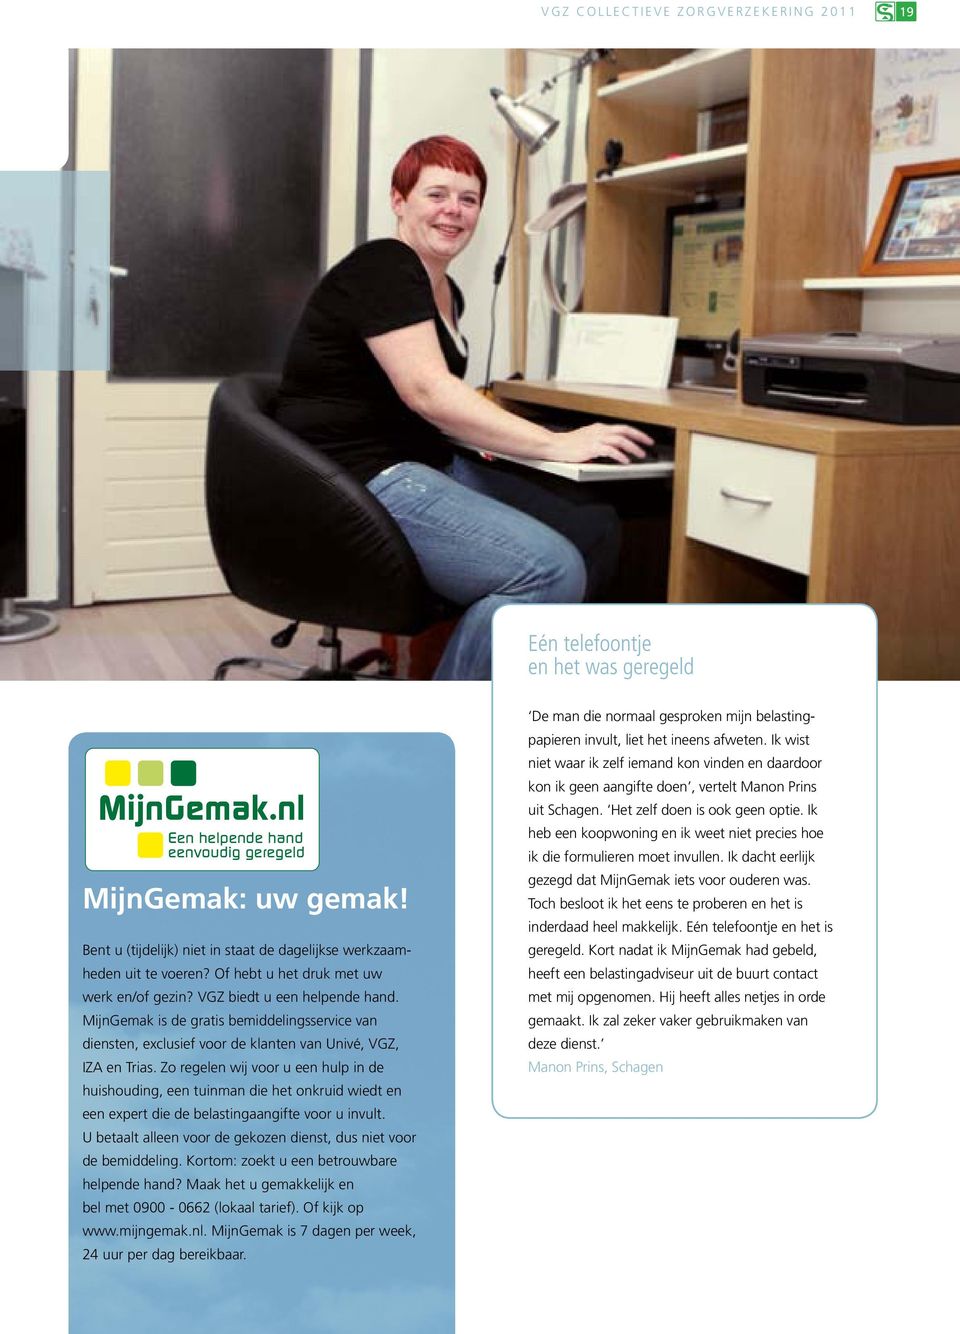 MijnGemak is de gratis bemiddelingsservice van diensten, exclusief voor de klanten van Univé, VGZ, IZA en Trias.